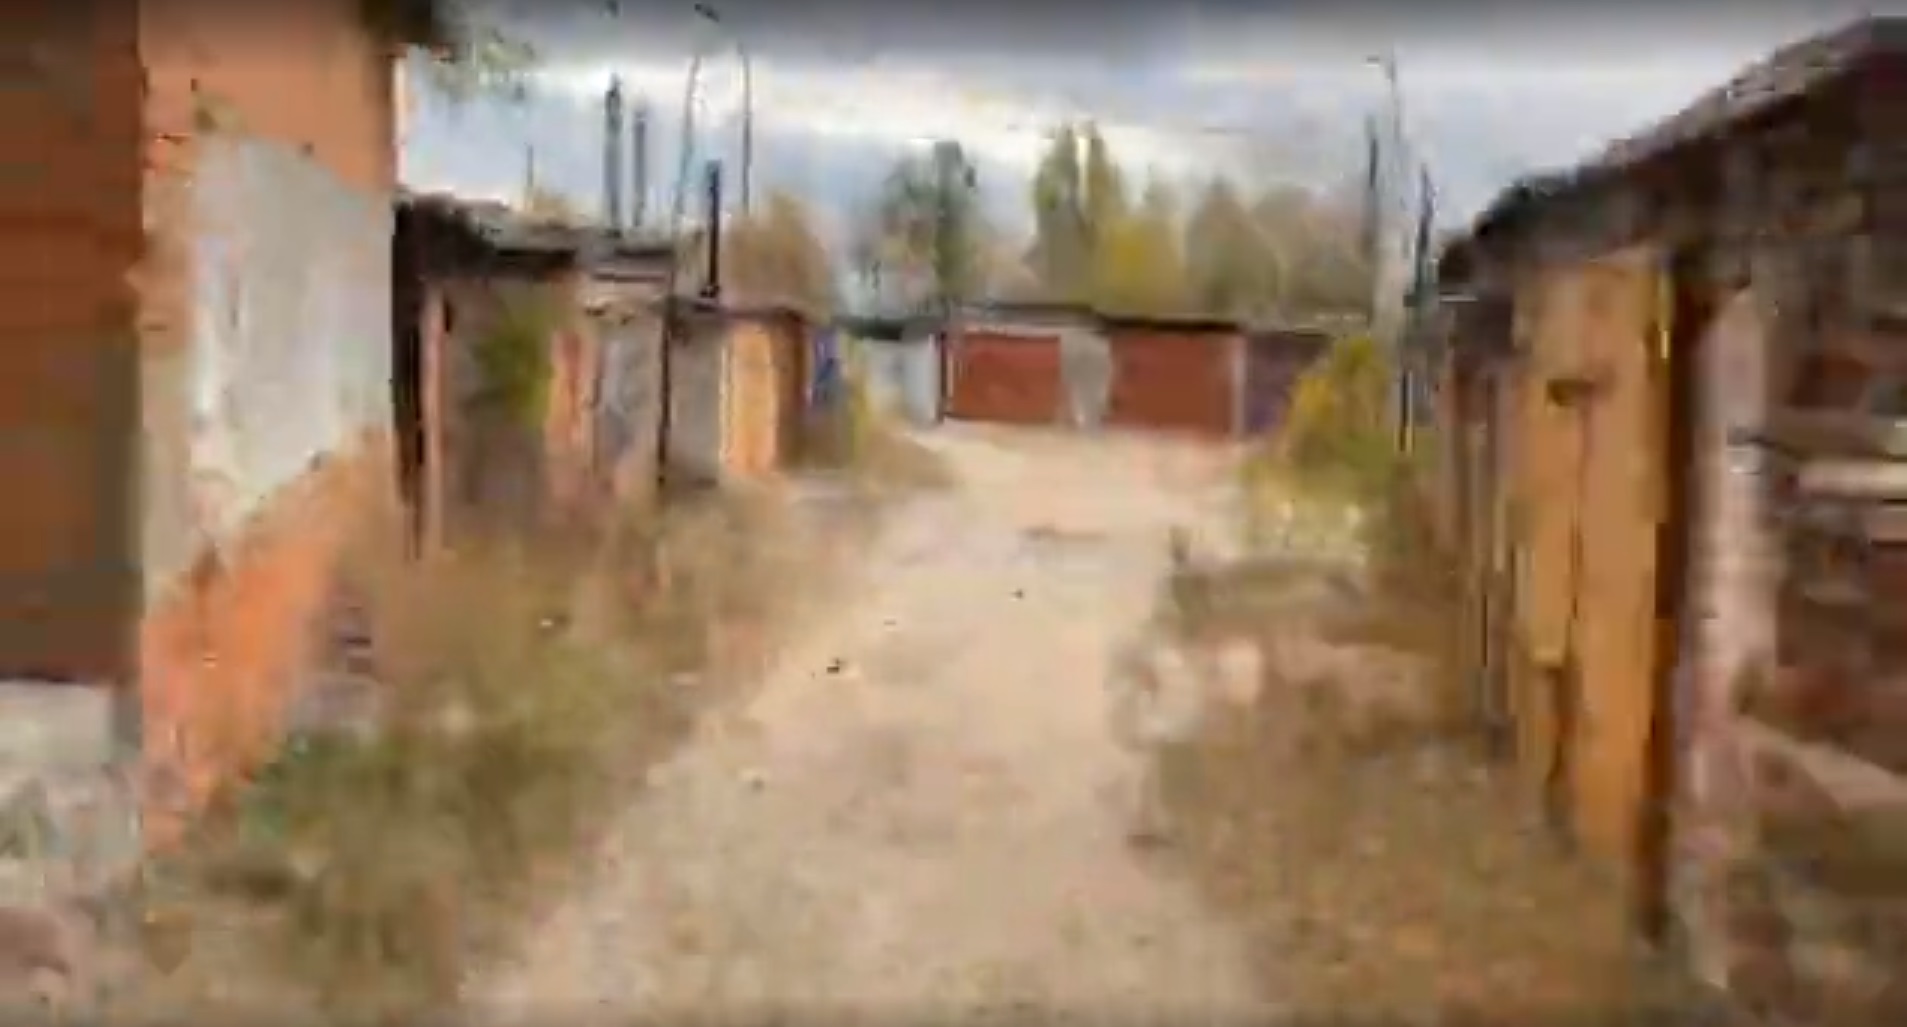 Опубликовано видео с маршрутом до школы убитой в Саратове девочки